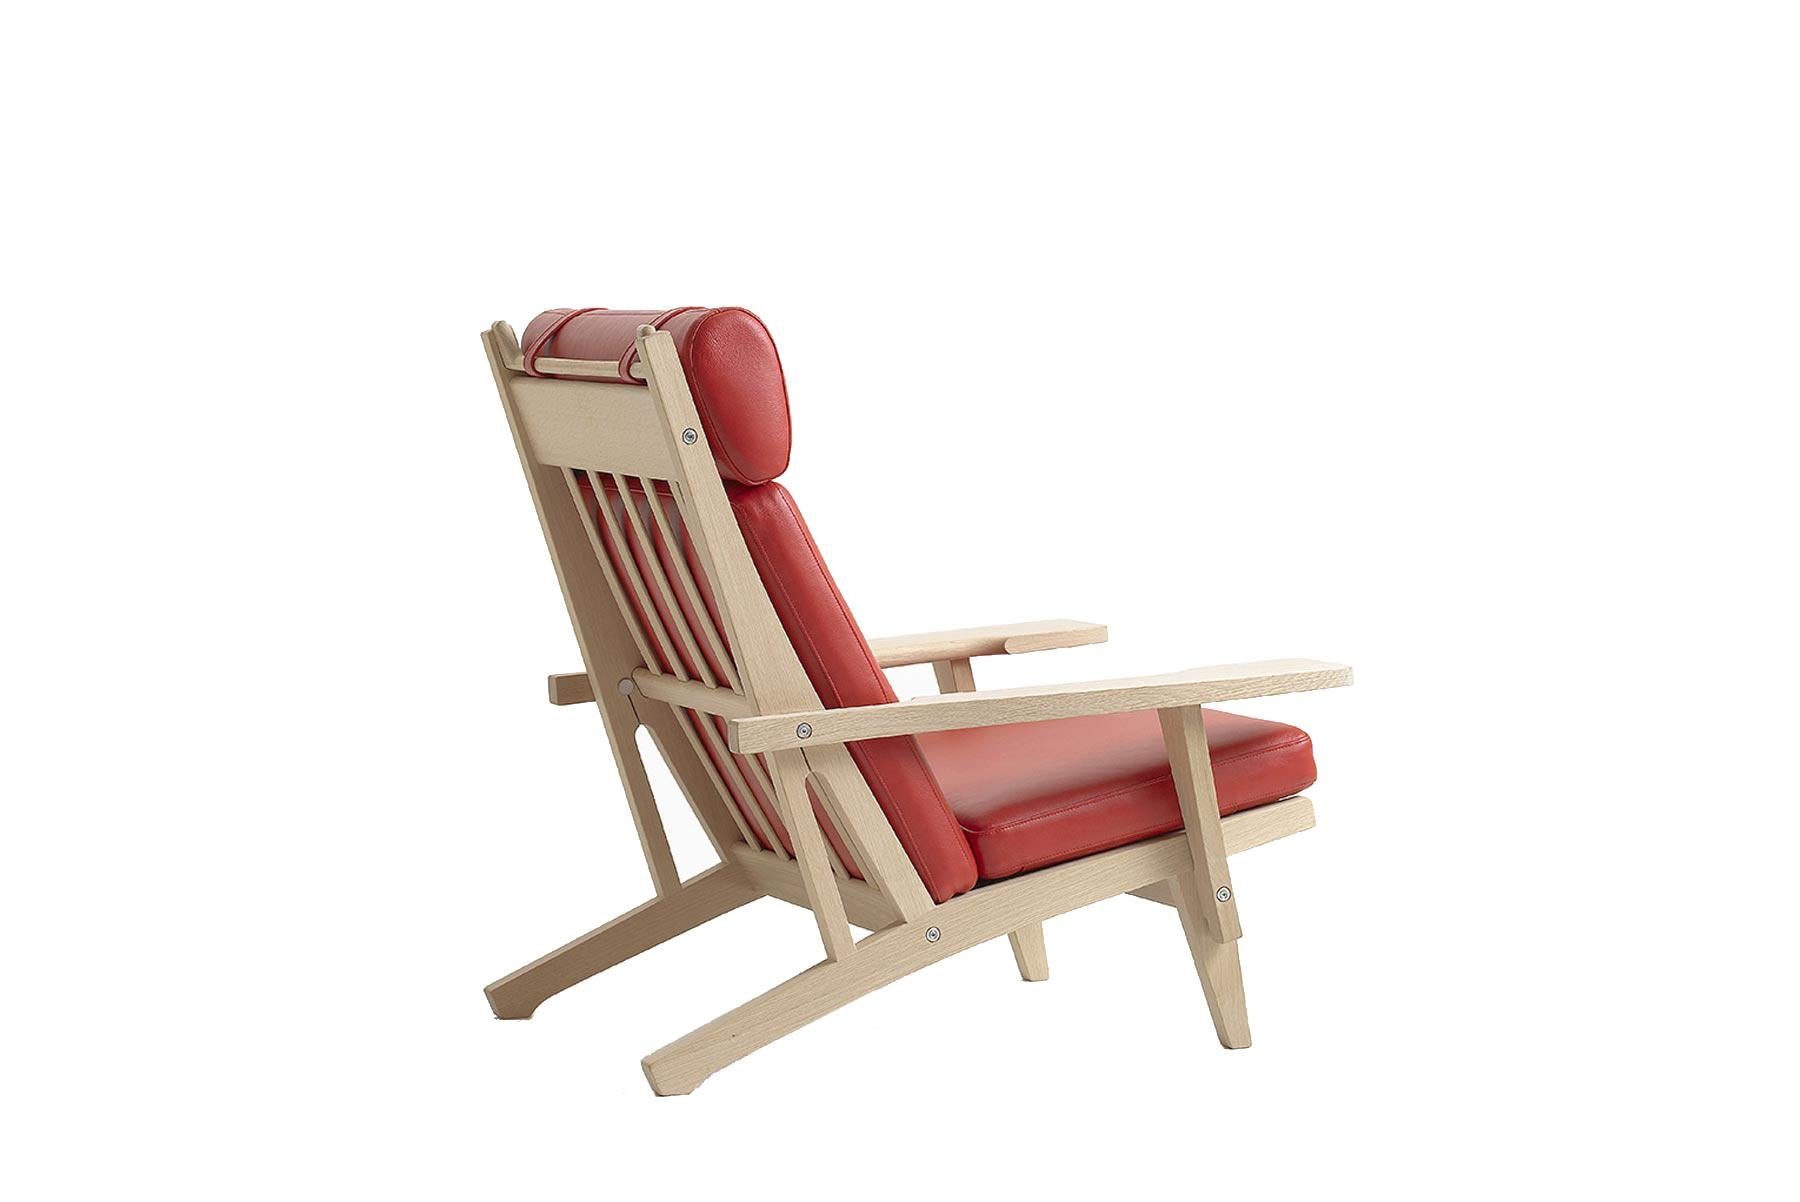 Conçue en 1969 par Hans Wegner, la chaise longue 375A allie des lignes épurées à un savoir-faire remarquable. La chaise est fabriquée à la main dans l'usine de GETAMA à Gedsted, au Danemark, par des ébénistes qualifiés utilisant des techniques